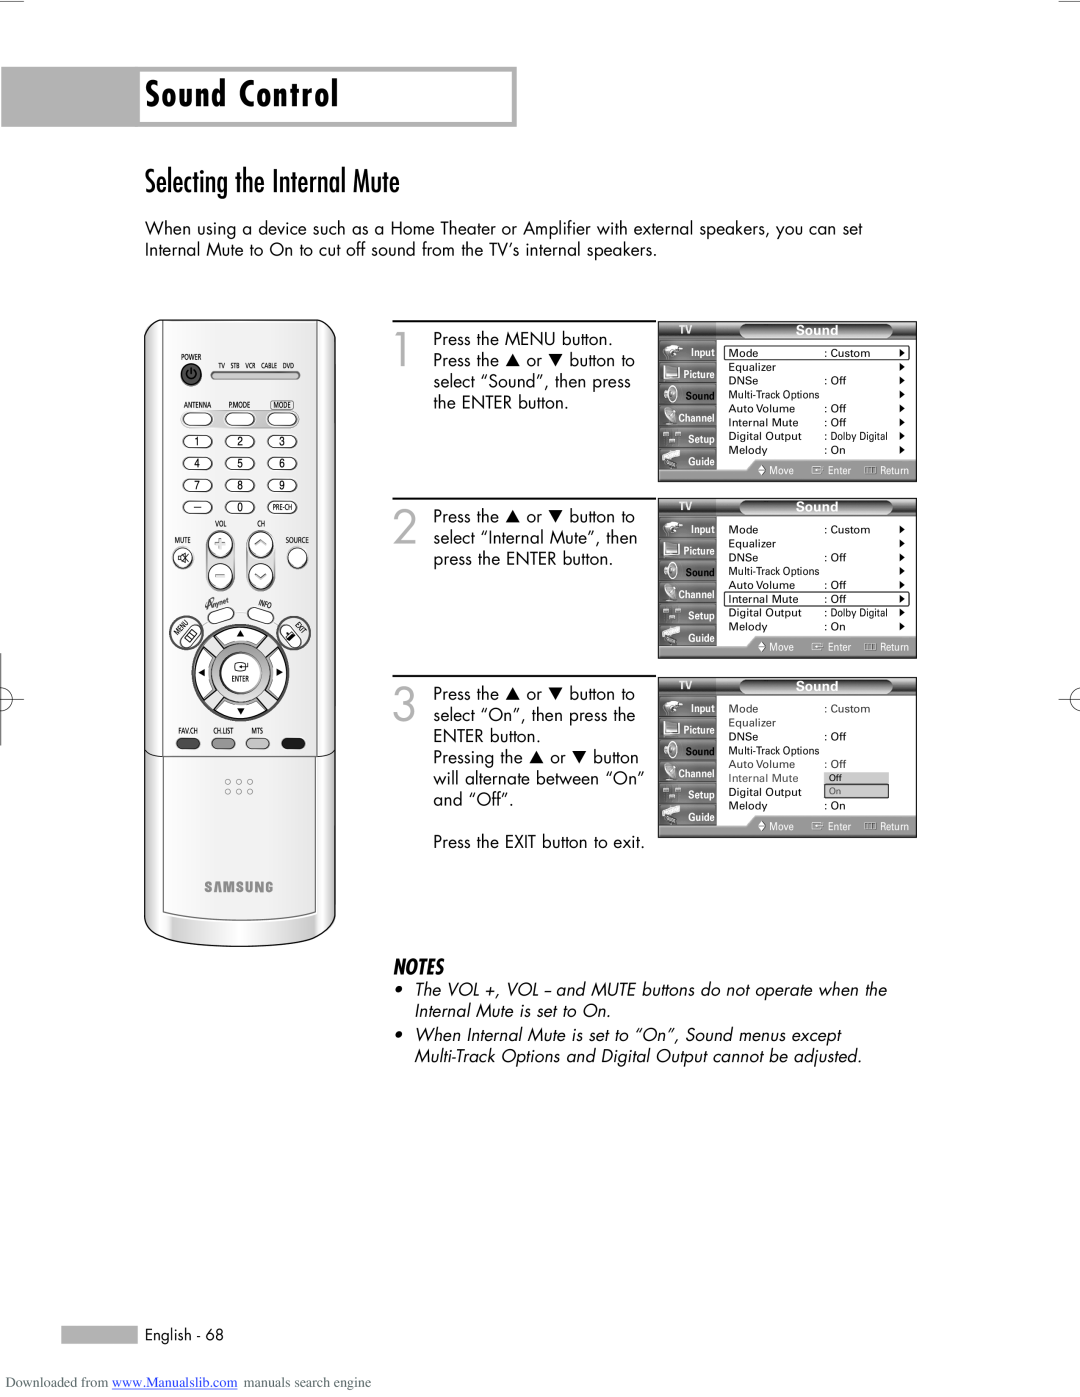 Samsung HL-R5056W, HL-R6156W, HL-R5656W manual Selecting the Internal Mute, Sound Control 